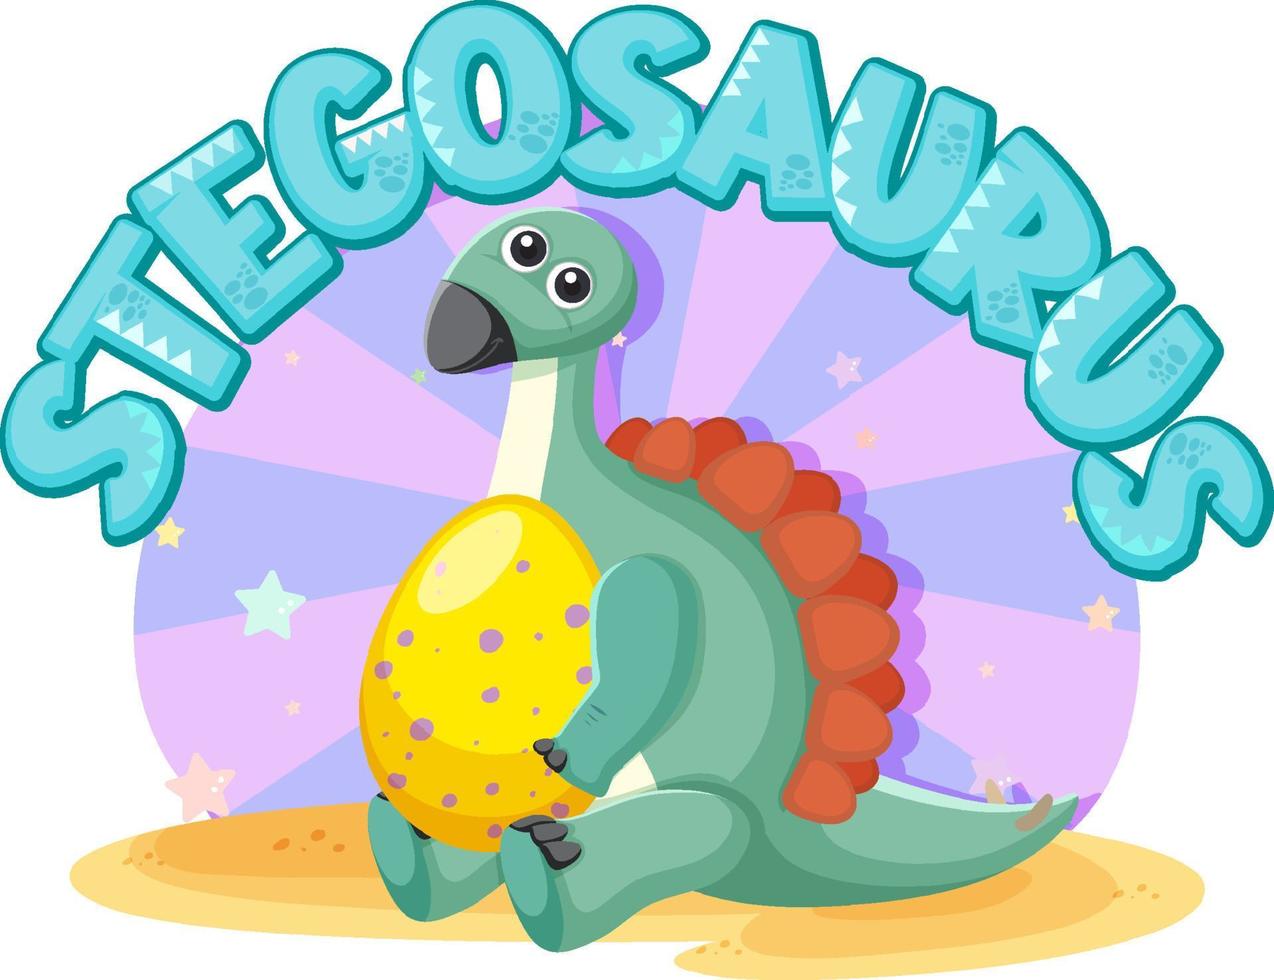 niedliche stegosaurus-zeichentrickfigur vektor